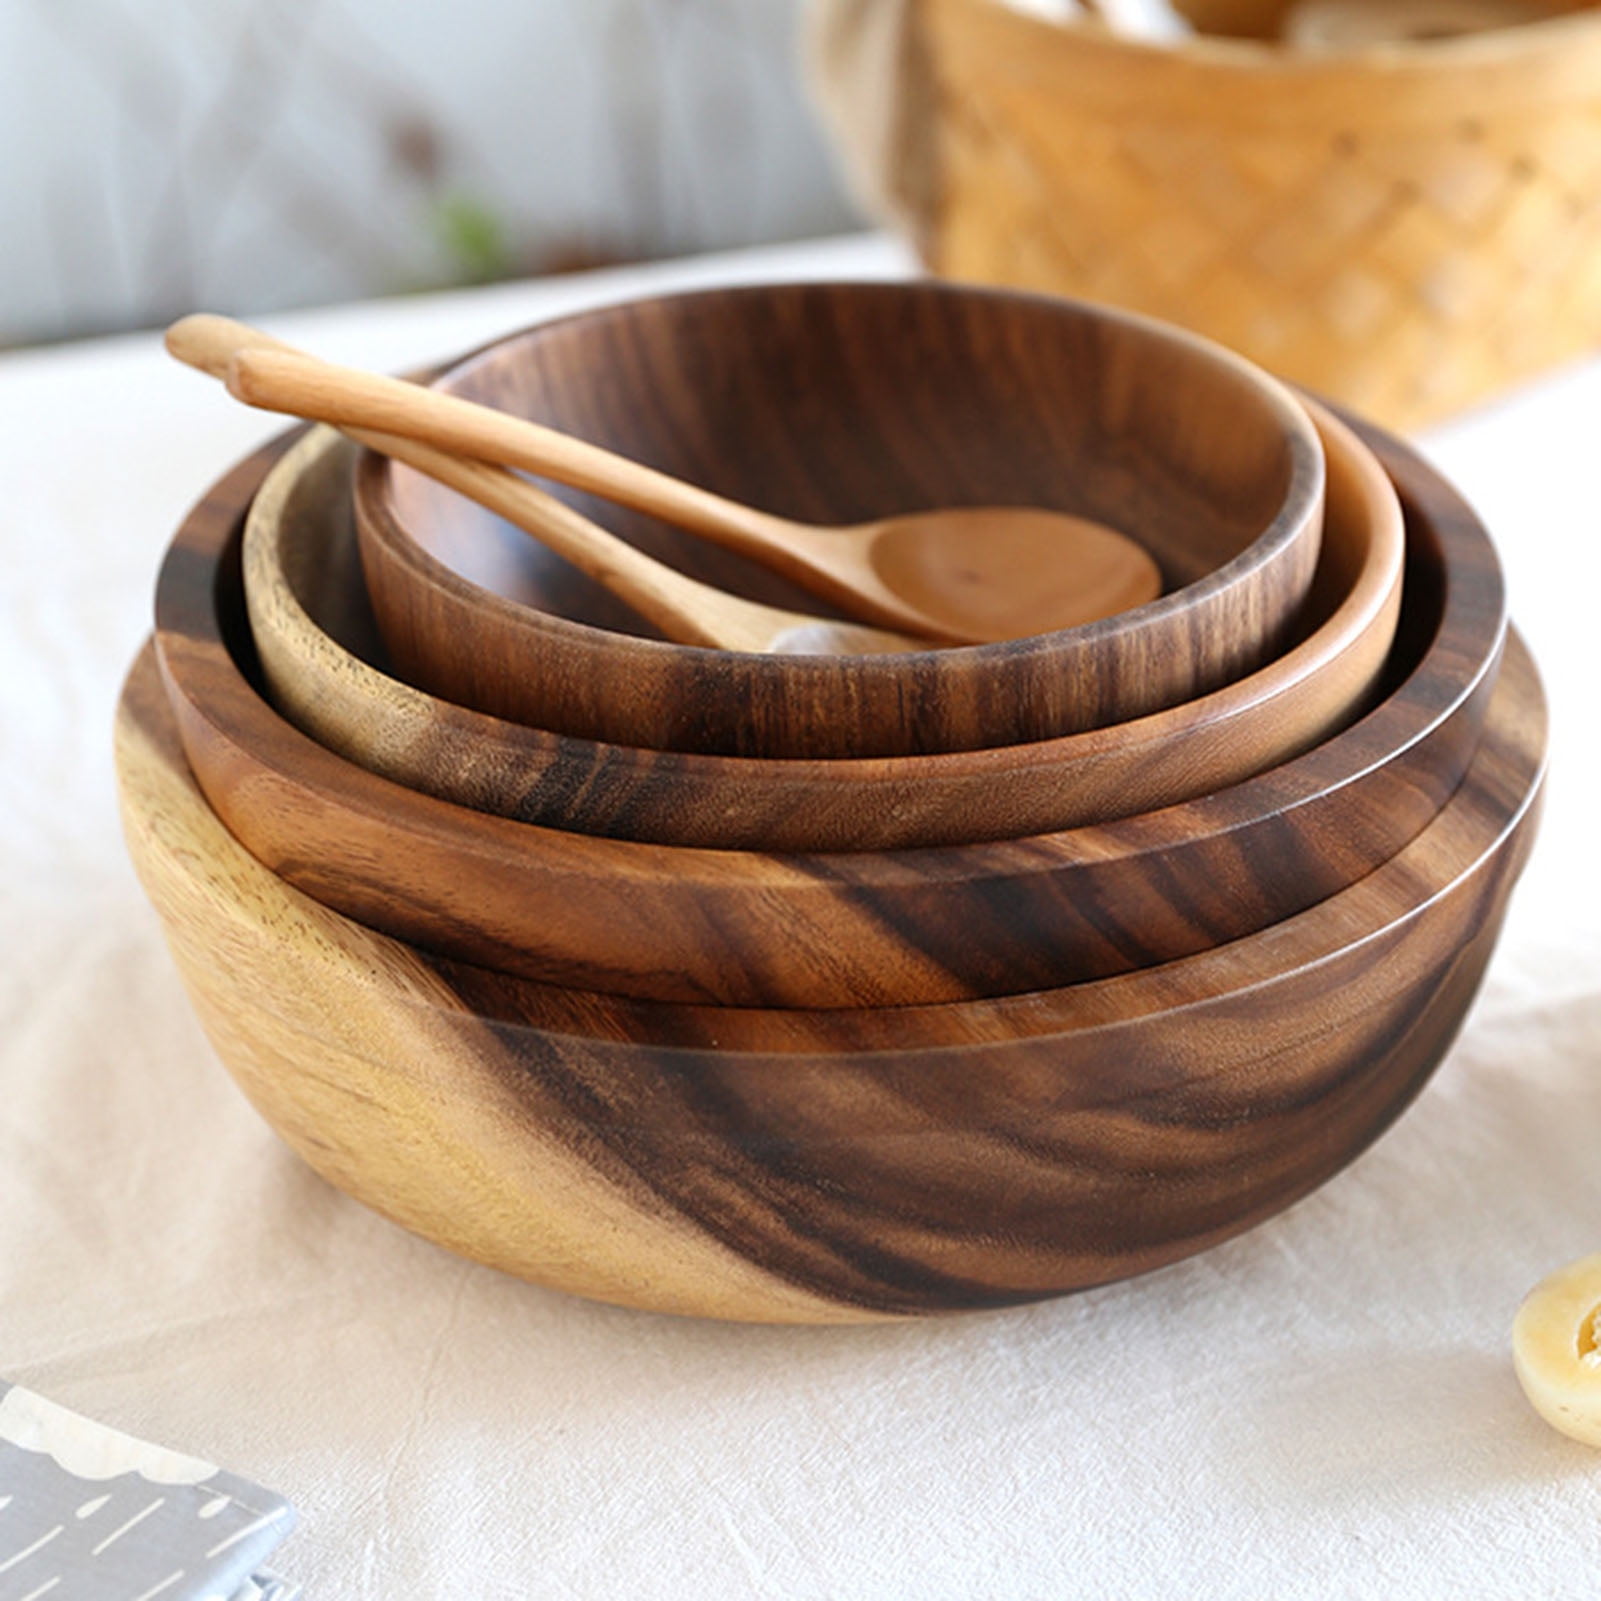 Handcraft Wooden Serving Bowl for Salad Snacks Serving Dishes Bowls Set Of 6 Pc 